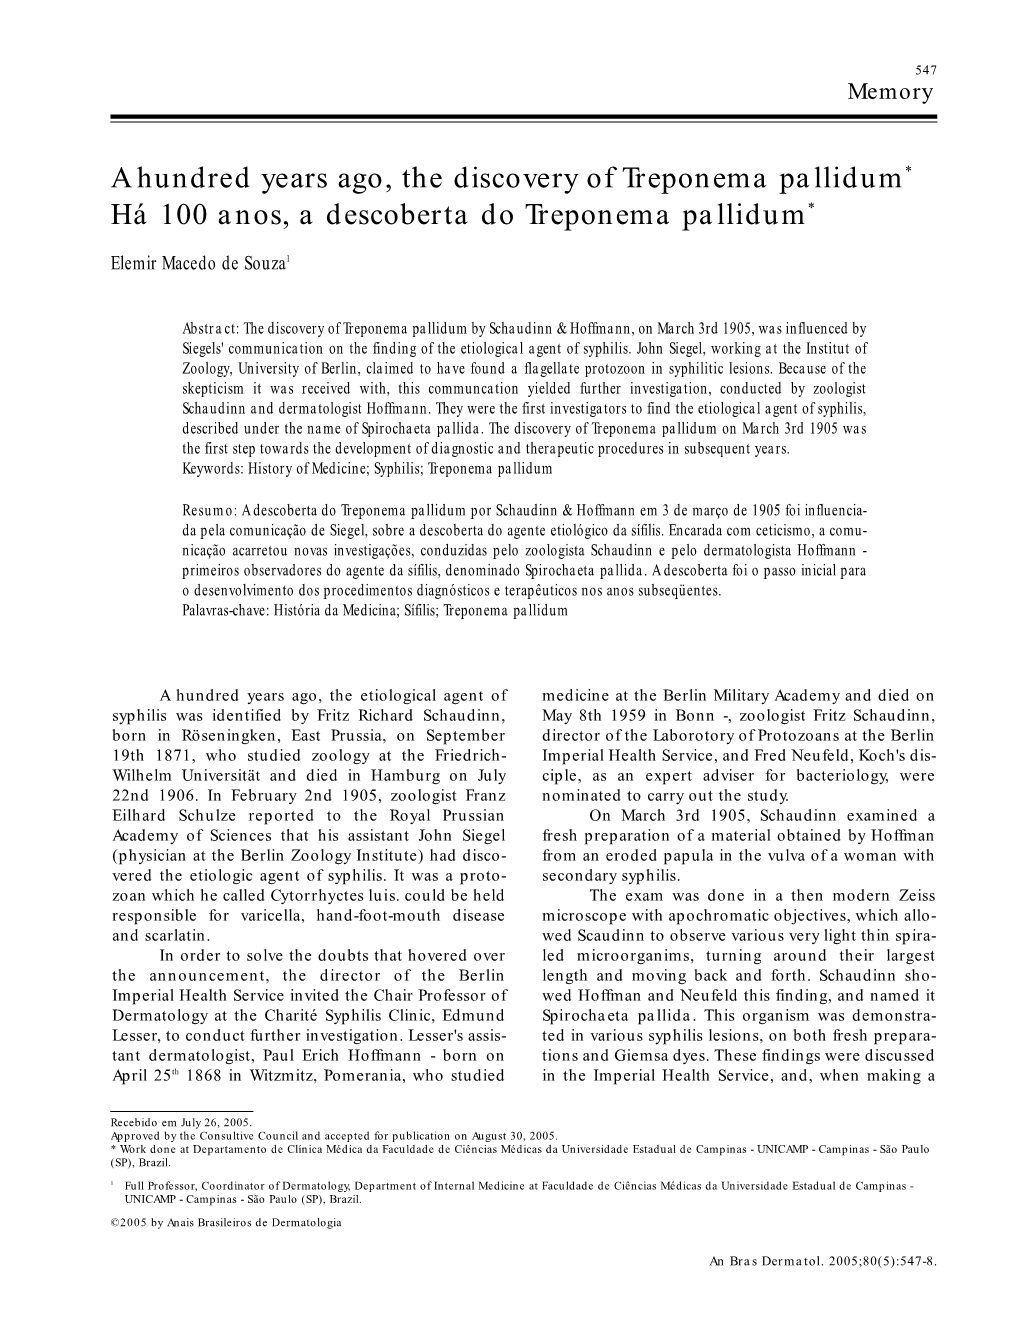 A Hundred Years Ago, the Discovery of Treponema Pallidum* Há 100 Anos, a Descoberta Do Treponema Pallidum*